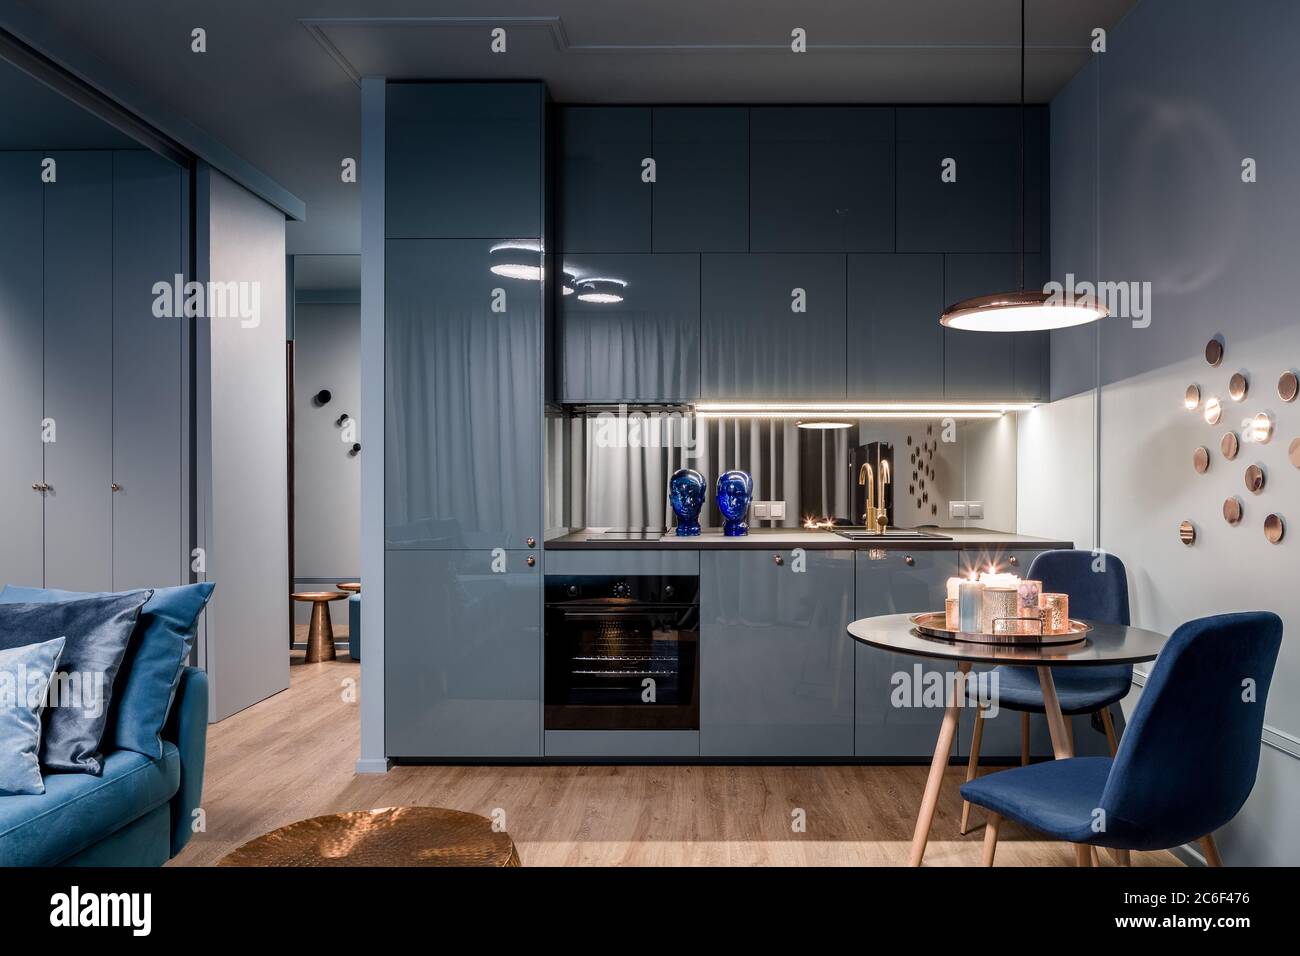 Interni di casa scuri in blu con cucina aperta e zona pranzo con tavolo rotondo Foto Stock